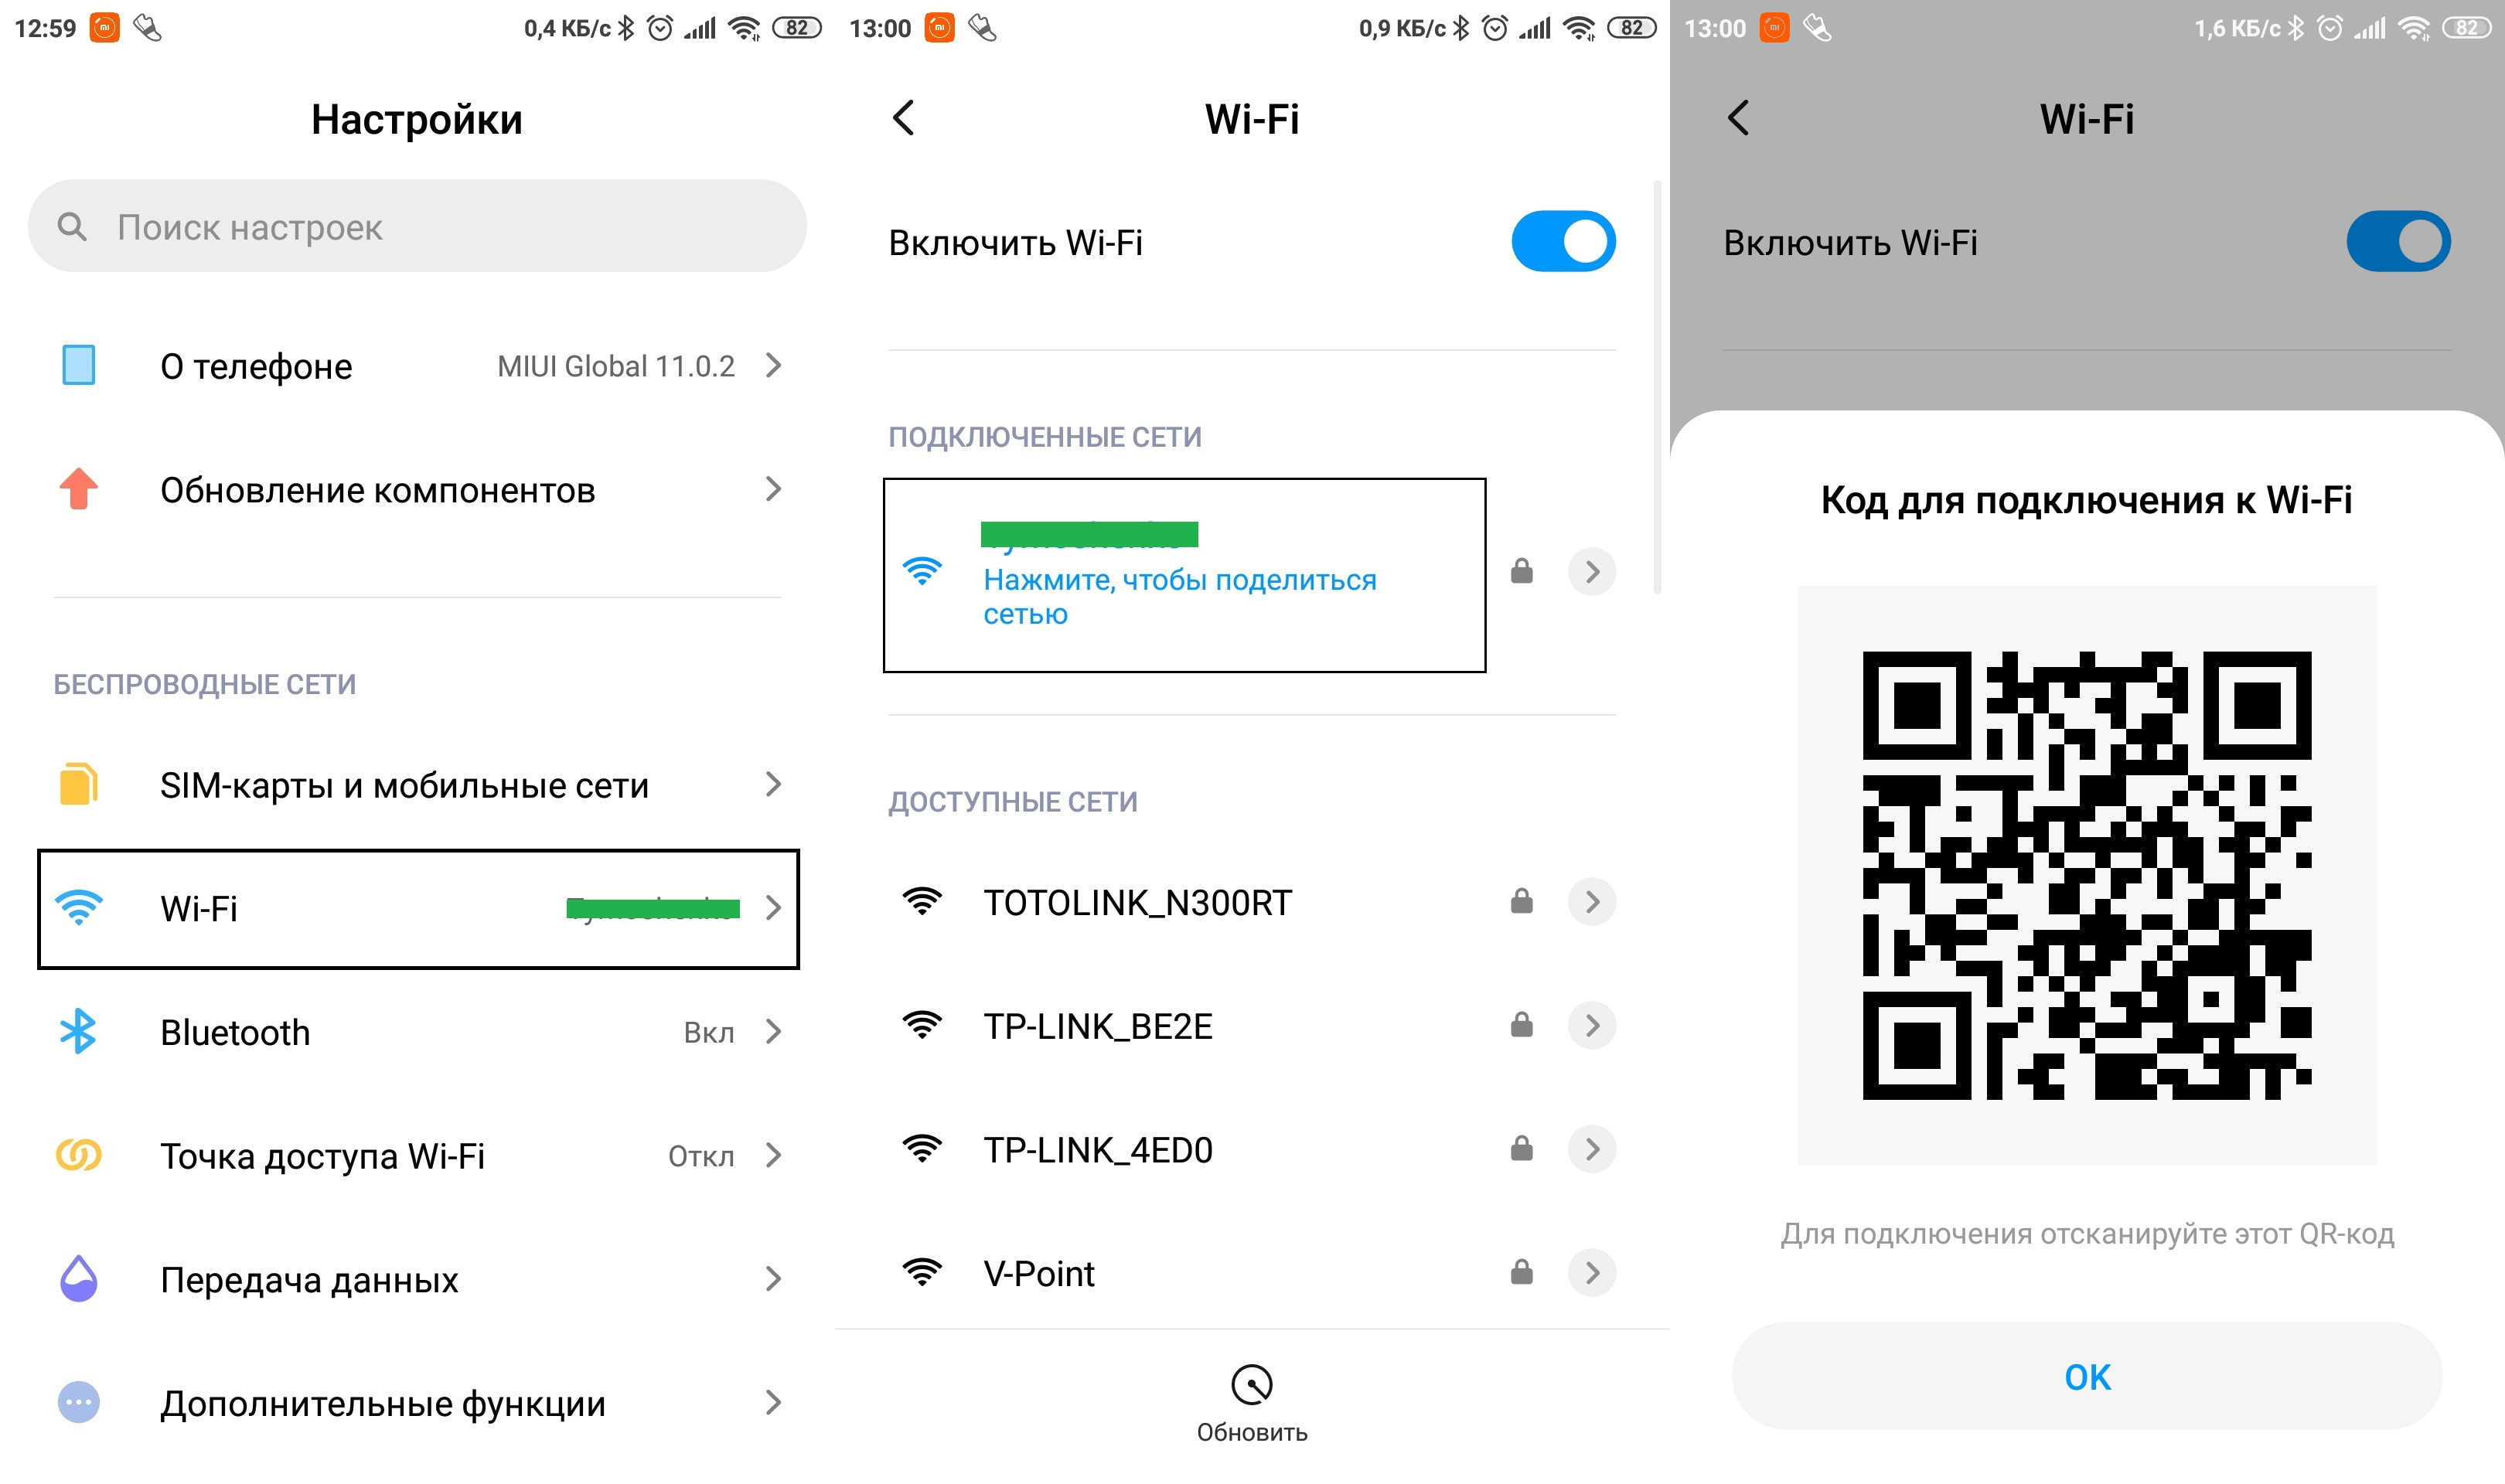 Как узнать пароль от wifi на телефоне android к которому подключен | a-apple.ru